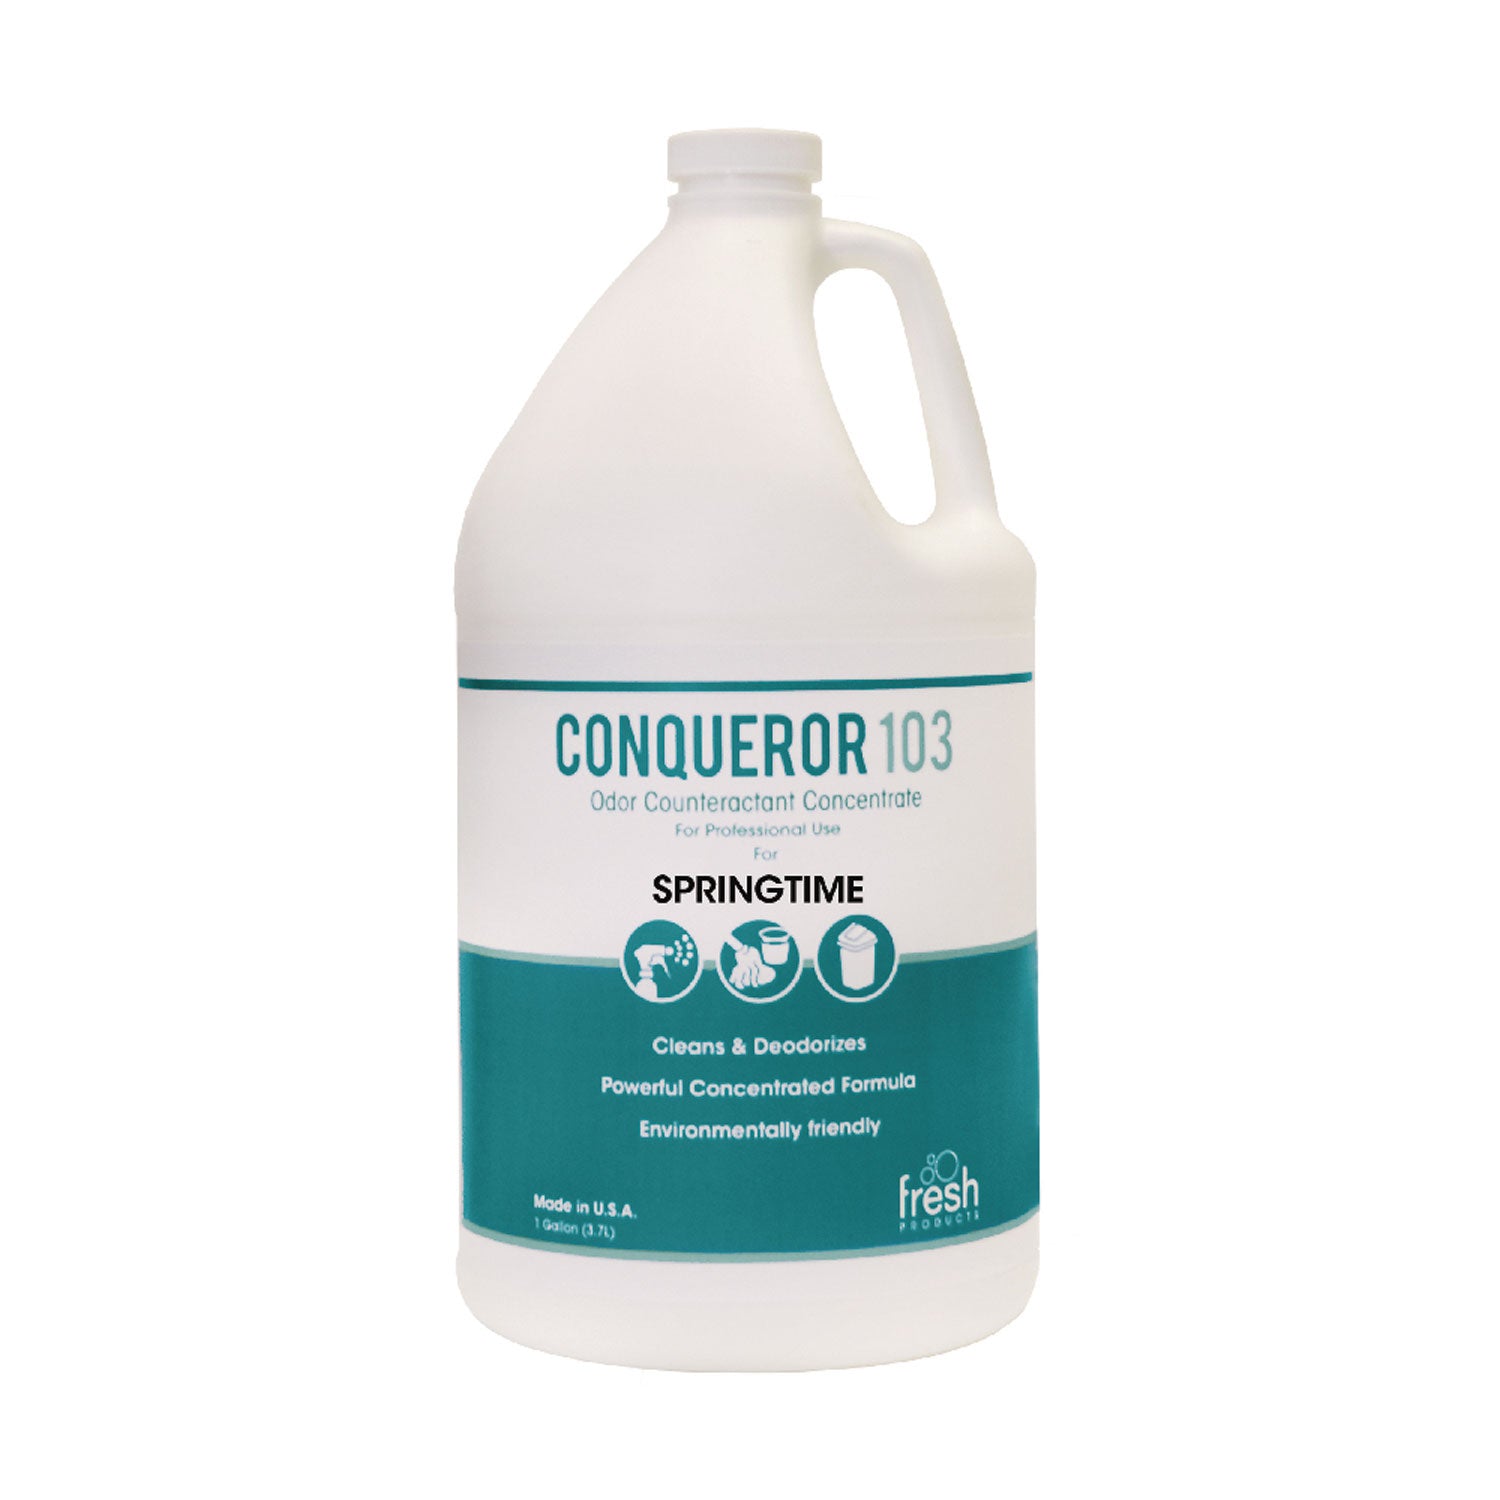 Conqueror 103 Odor Counteractant Concentrate, Springtime, 1 gal Bottle, 4/Carton - 1